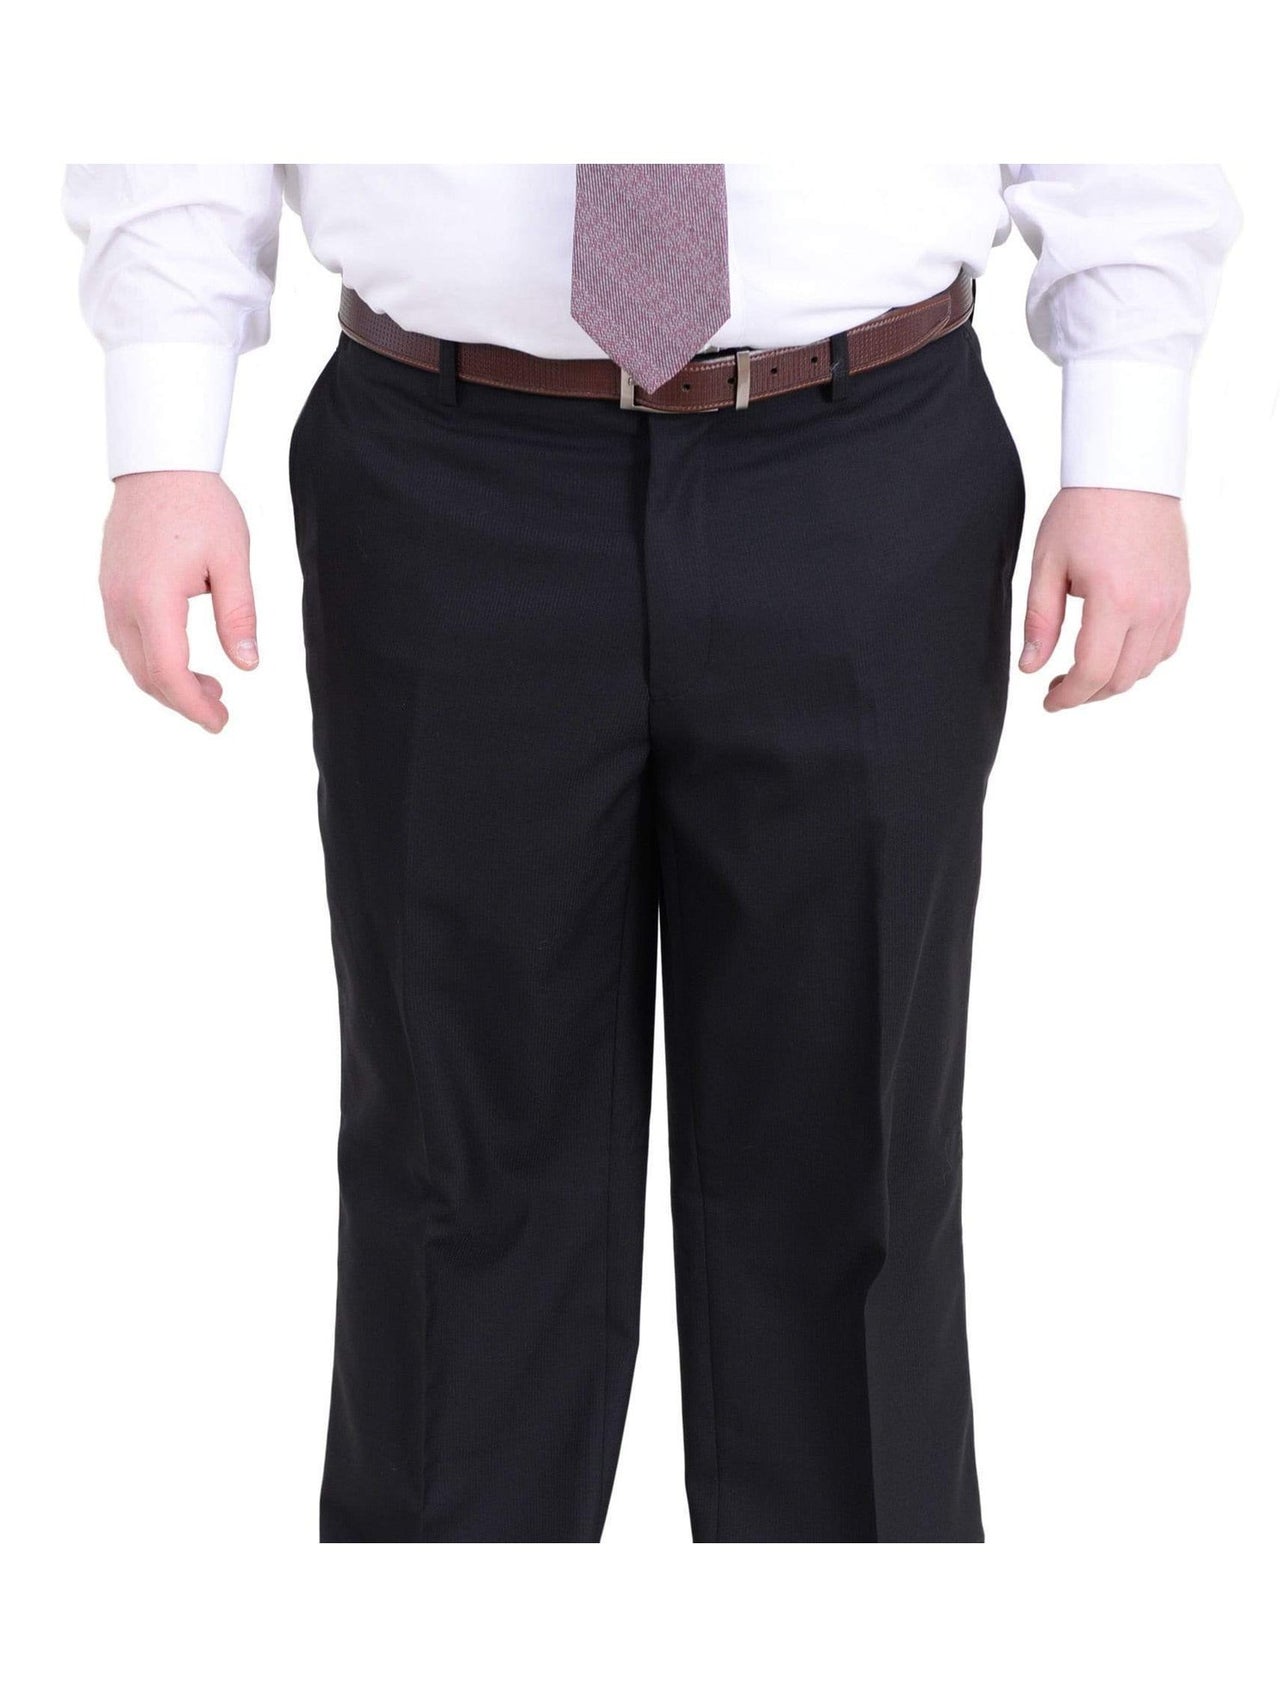 Arthur Black TWO PIECE SUITS Men's Arthur Black Executive Portly Fit Black Striped 2 Button 2 Piece Wool Suit